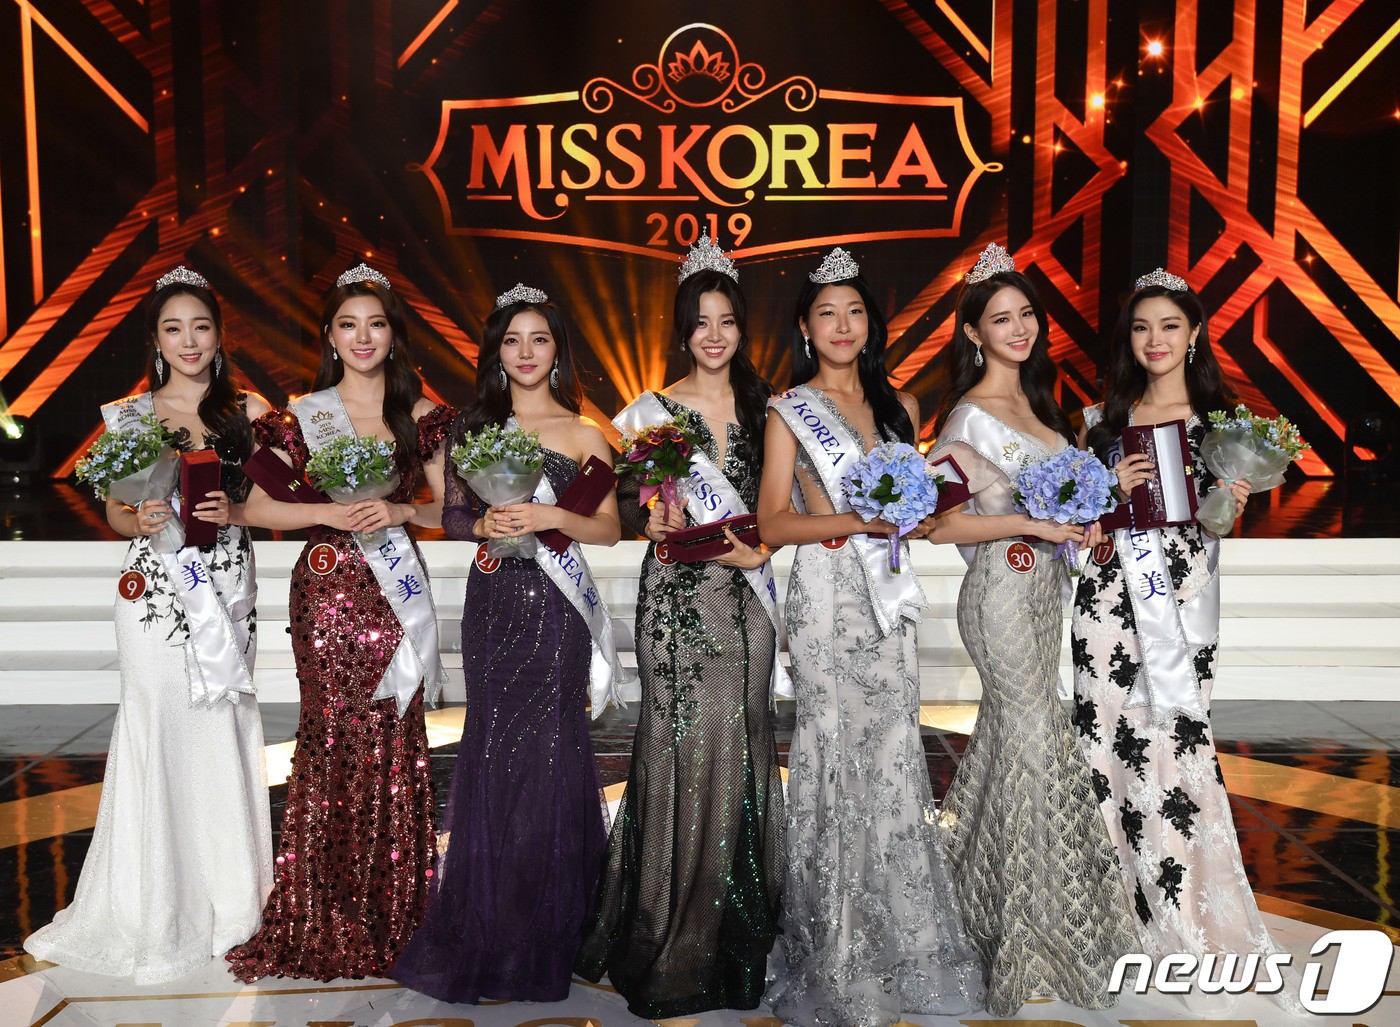 Thua kém về điểm gì chưa biết nhưng riêng váy dạ hội, thí sinh Hoa hậu Hàn Quốc 2019 thua xa chúng ta - Ảnh 1.